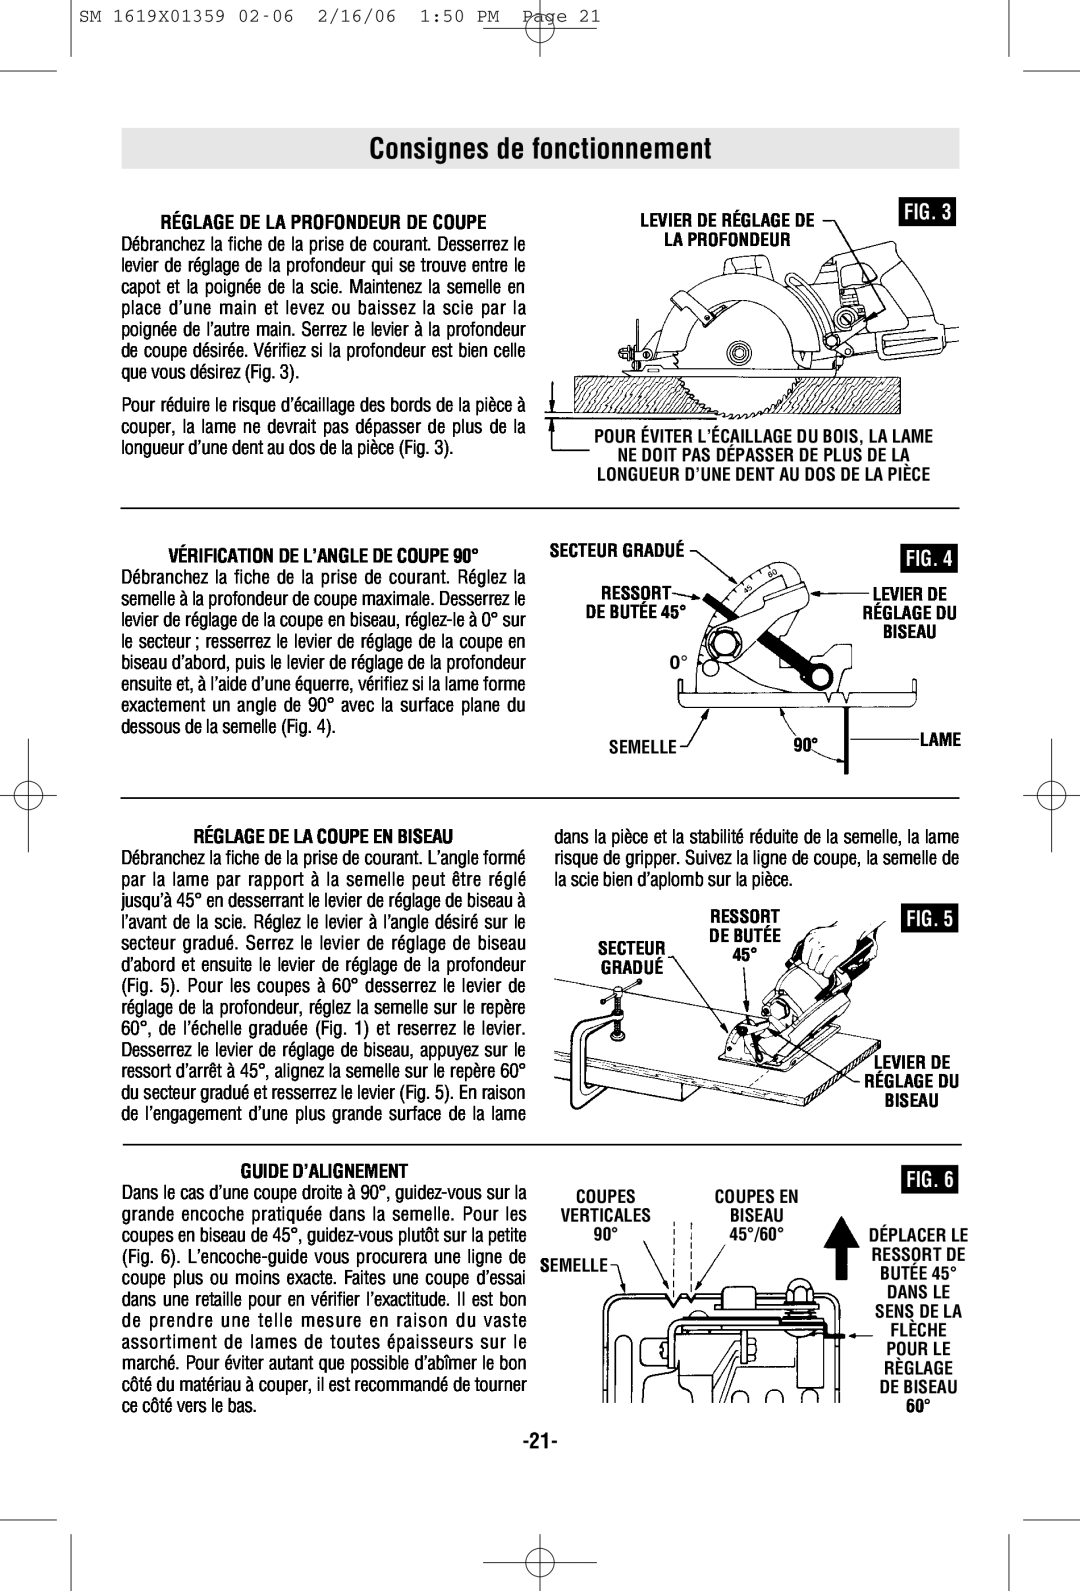 Skil HD5860 manual Consignes de fonctionnement, Réglage De La Profondeur De Coupe, Vérification De L’Angle De Coupe, Fig 